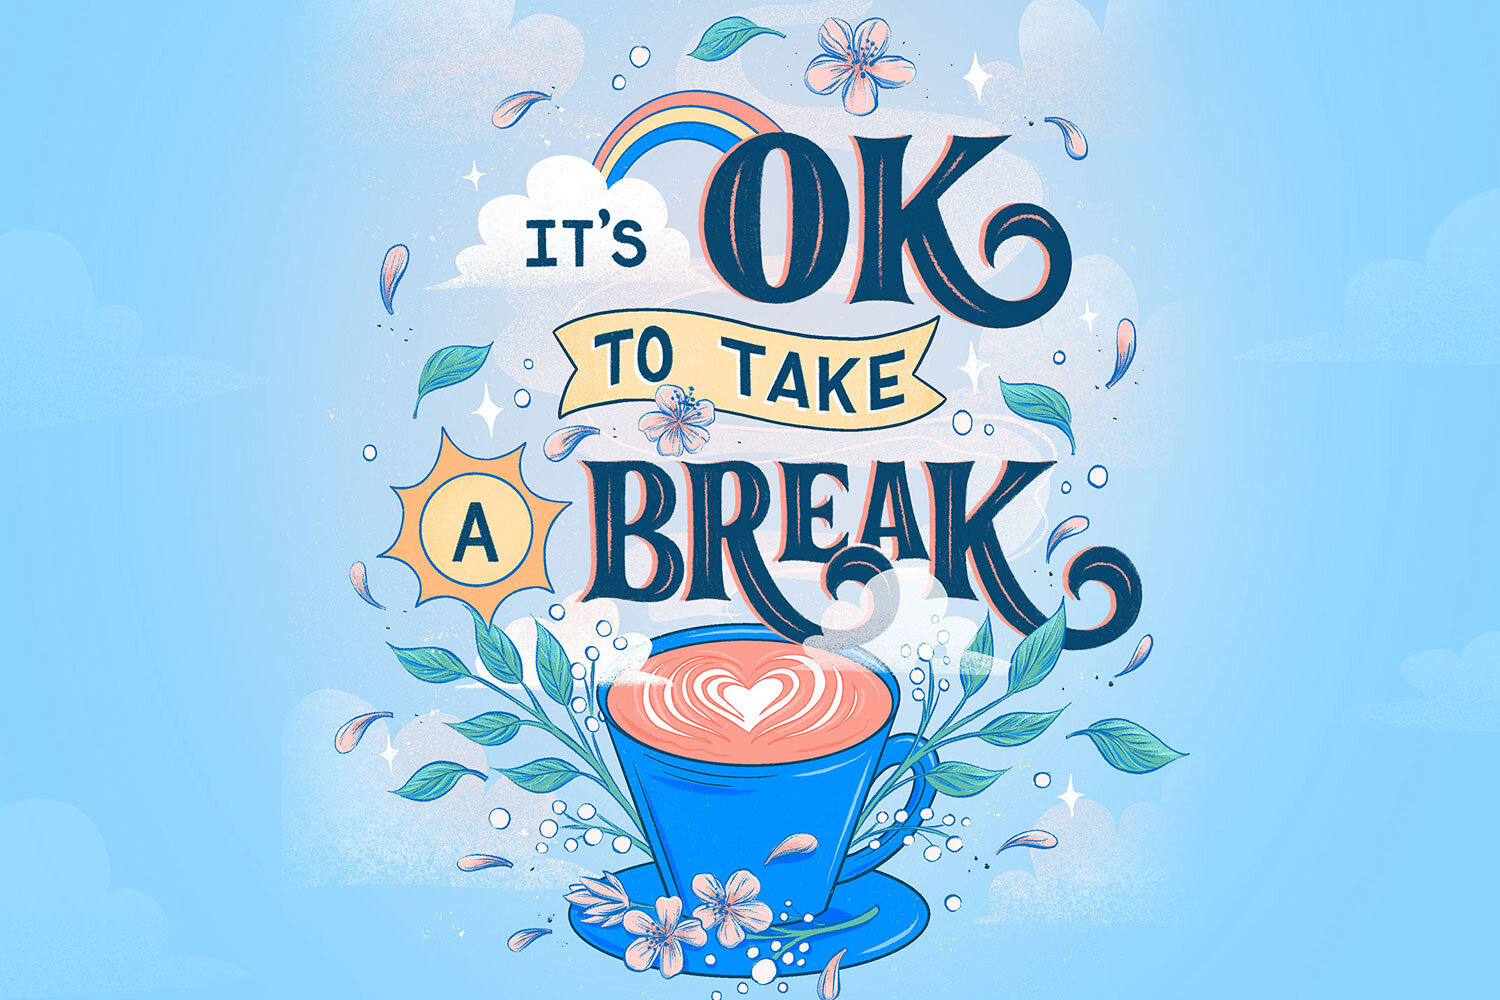 take breaks in between